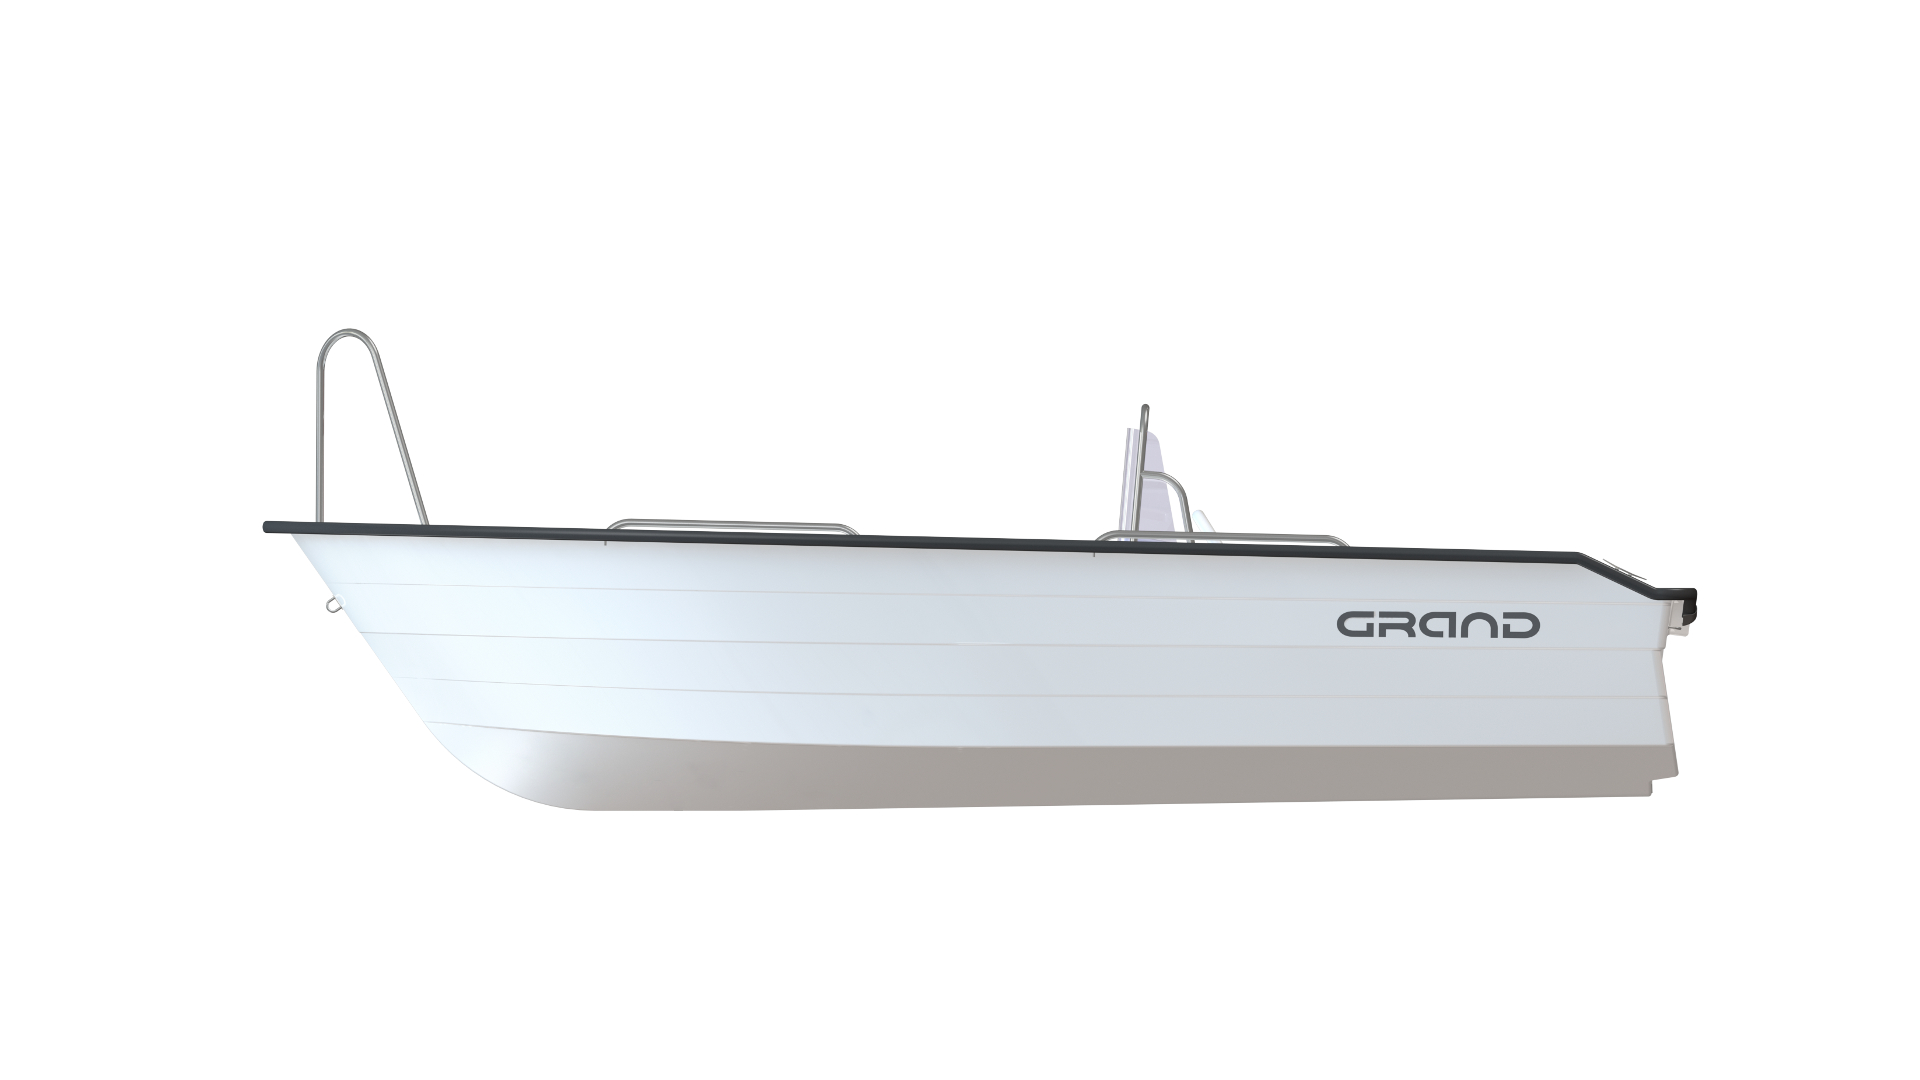 Стеклопластиковая моторная лодка GRAND Nautilus N440L, GRAND N440L, GRAND Nautilus, GRAND Nautilus N440L, Стеклопластиковая моторная лодка GRAND, Моторная лодка GRAND, Стеклопластиковая лодка GRAND, Лодка для рыбалки, Лодка для большой компании